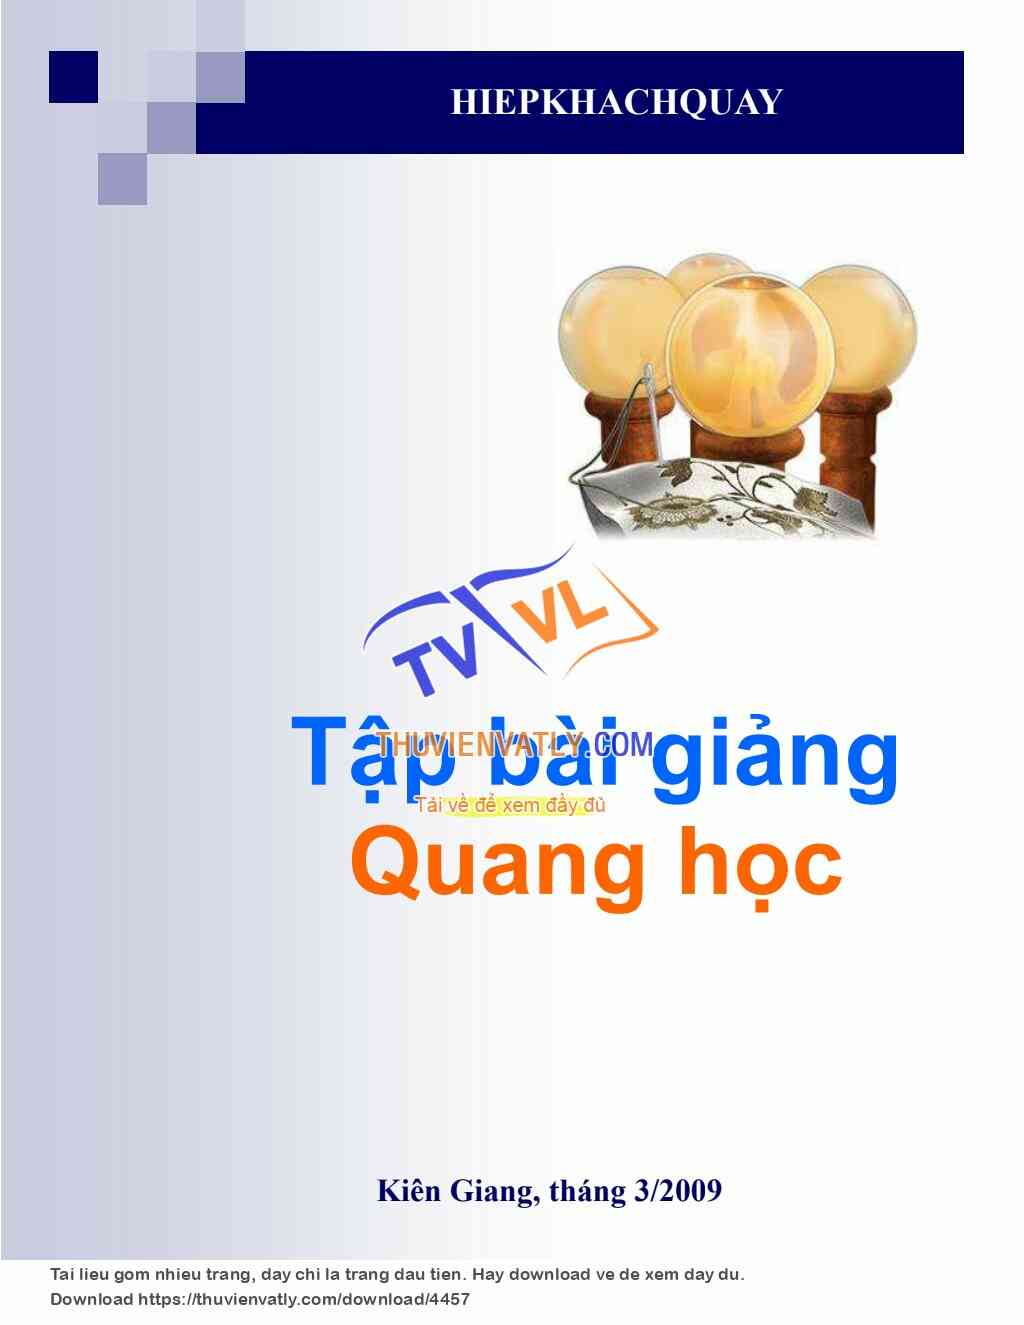 Bài giảng Quang học (Ver. 2009)